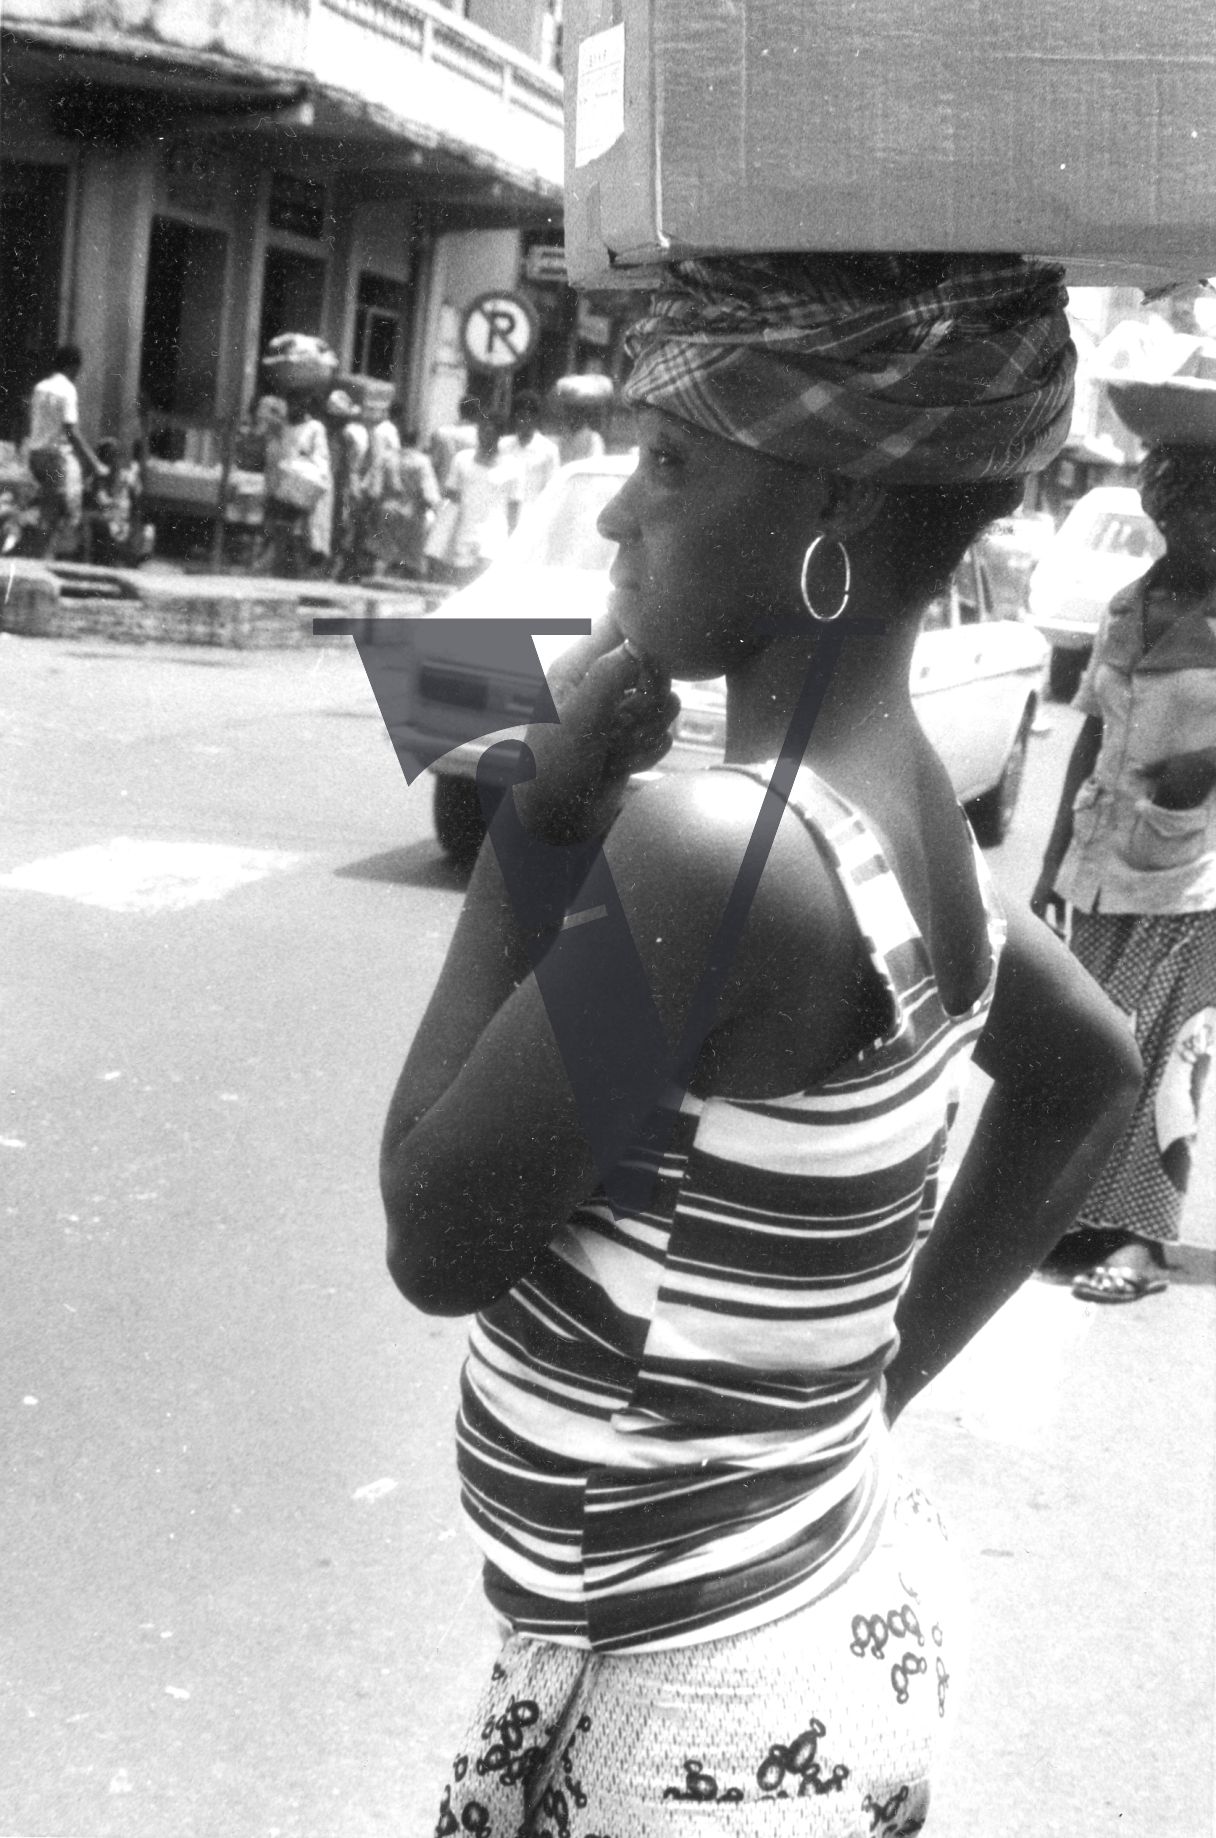 Sierra Leone, streets, woman carrying basket on head.